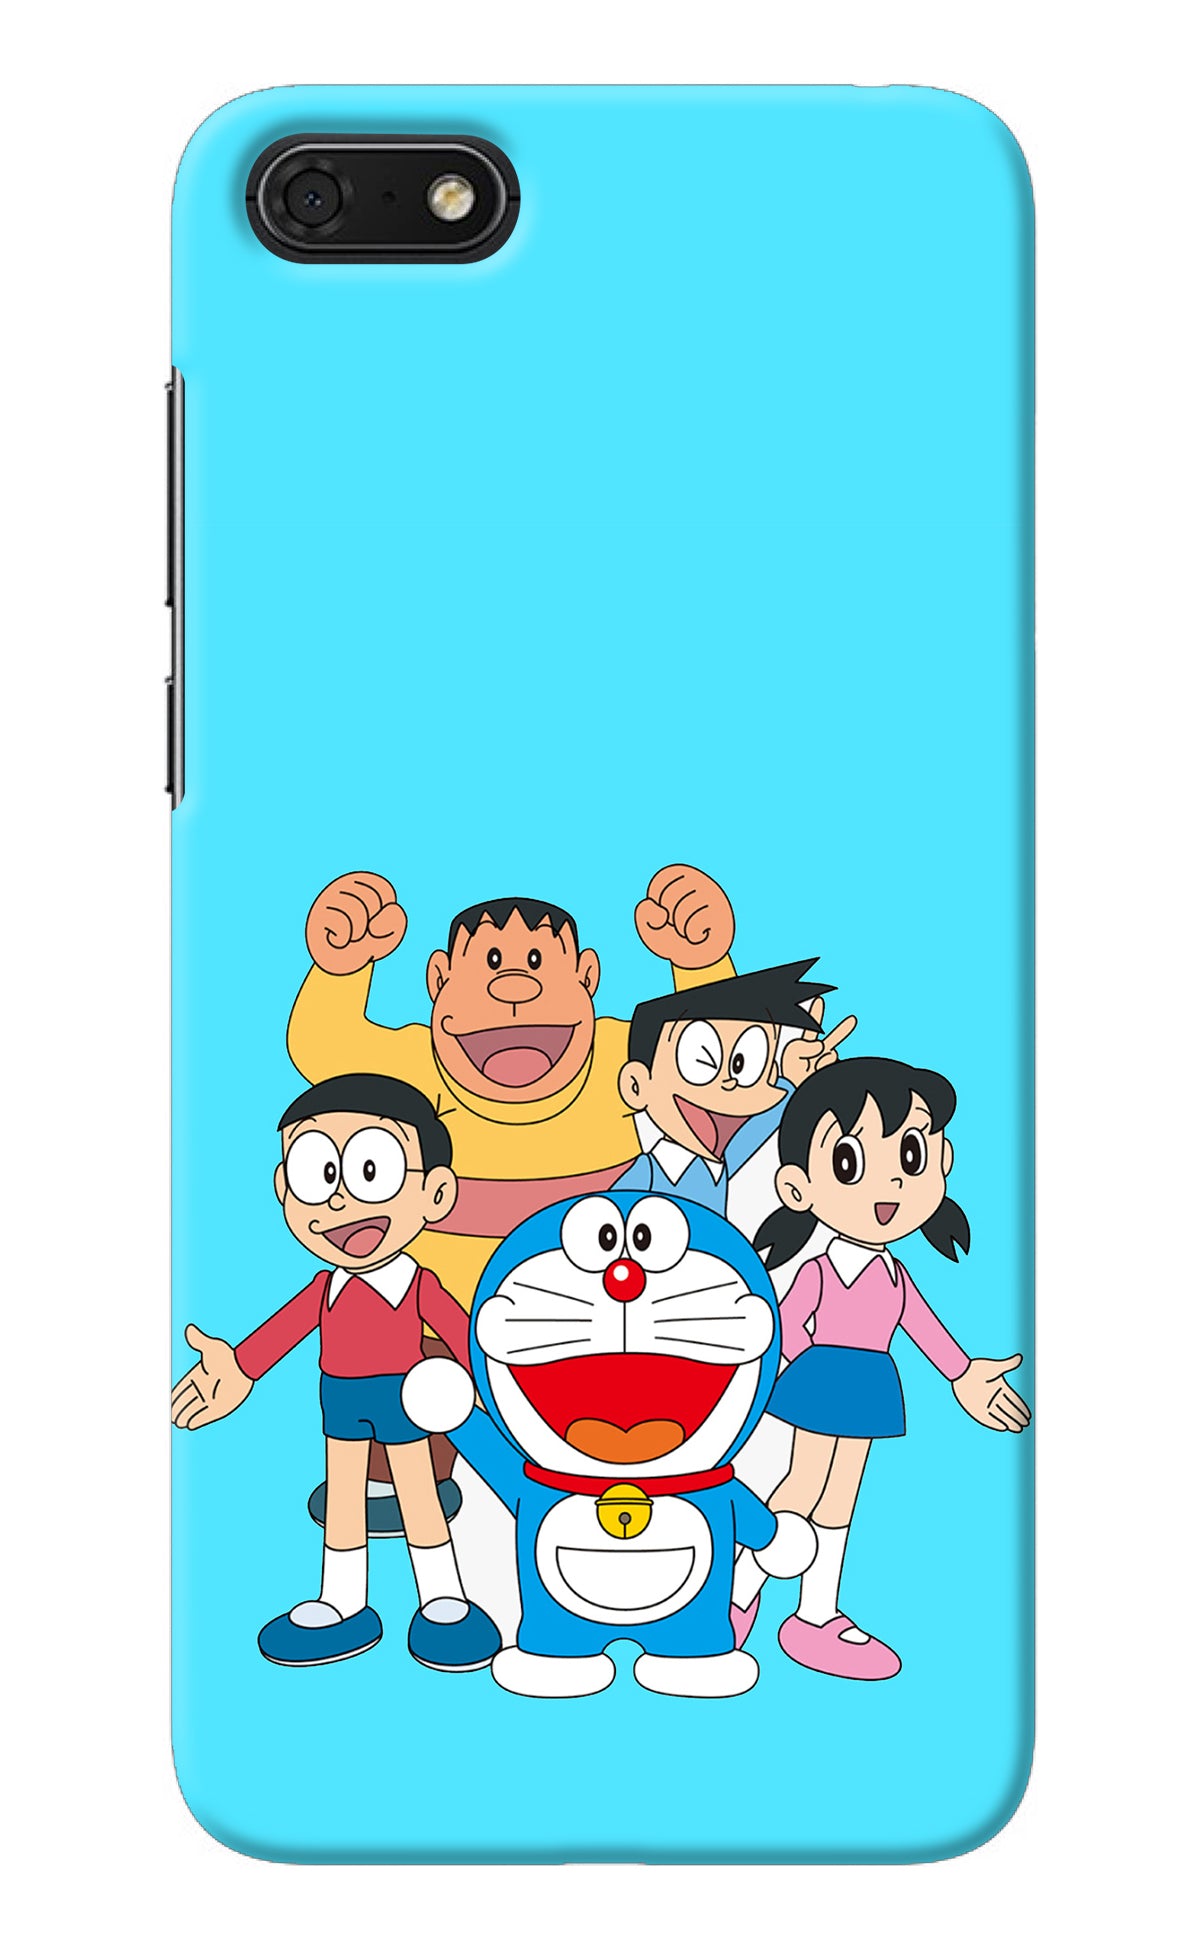 Doraemon Gang Honor 7S Back Cover